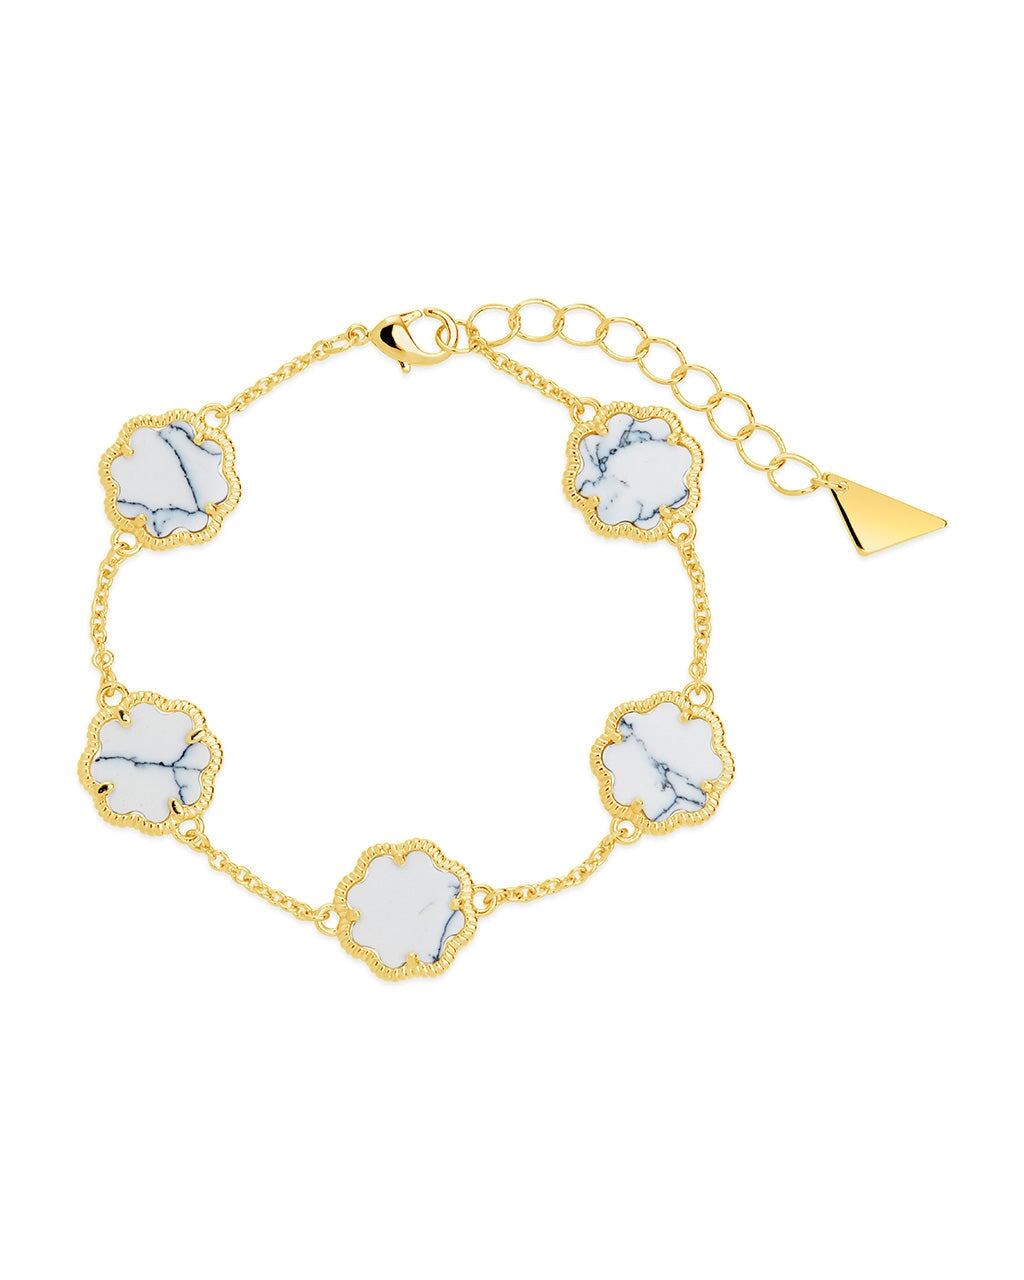 Rose Petal Station Bracelet Bracelet Sterling Forever Gold White Turquoise 